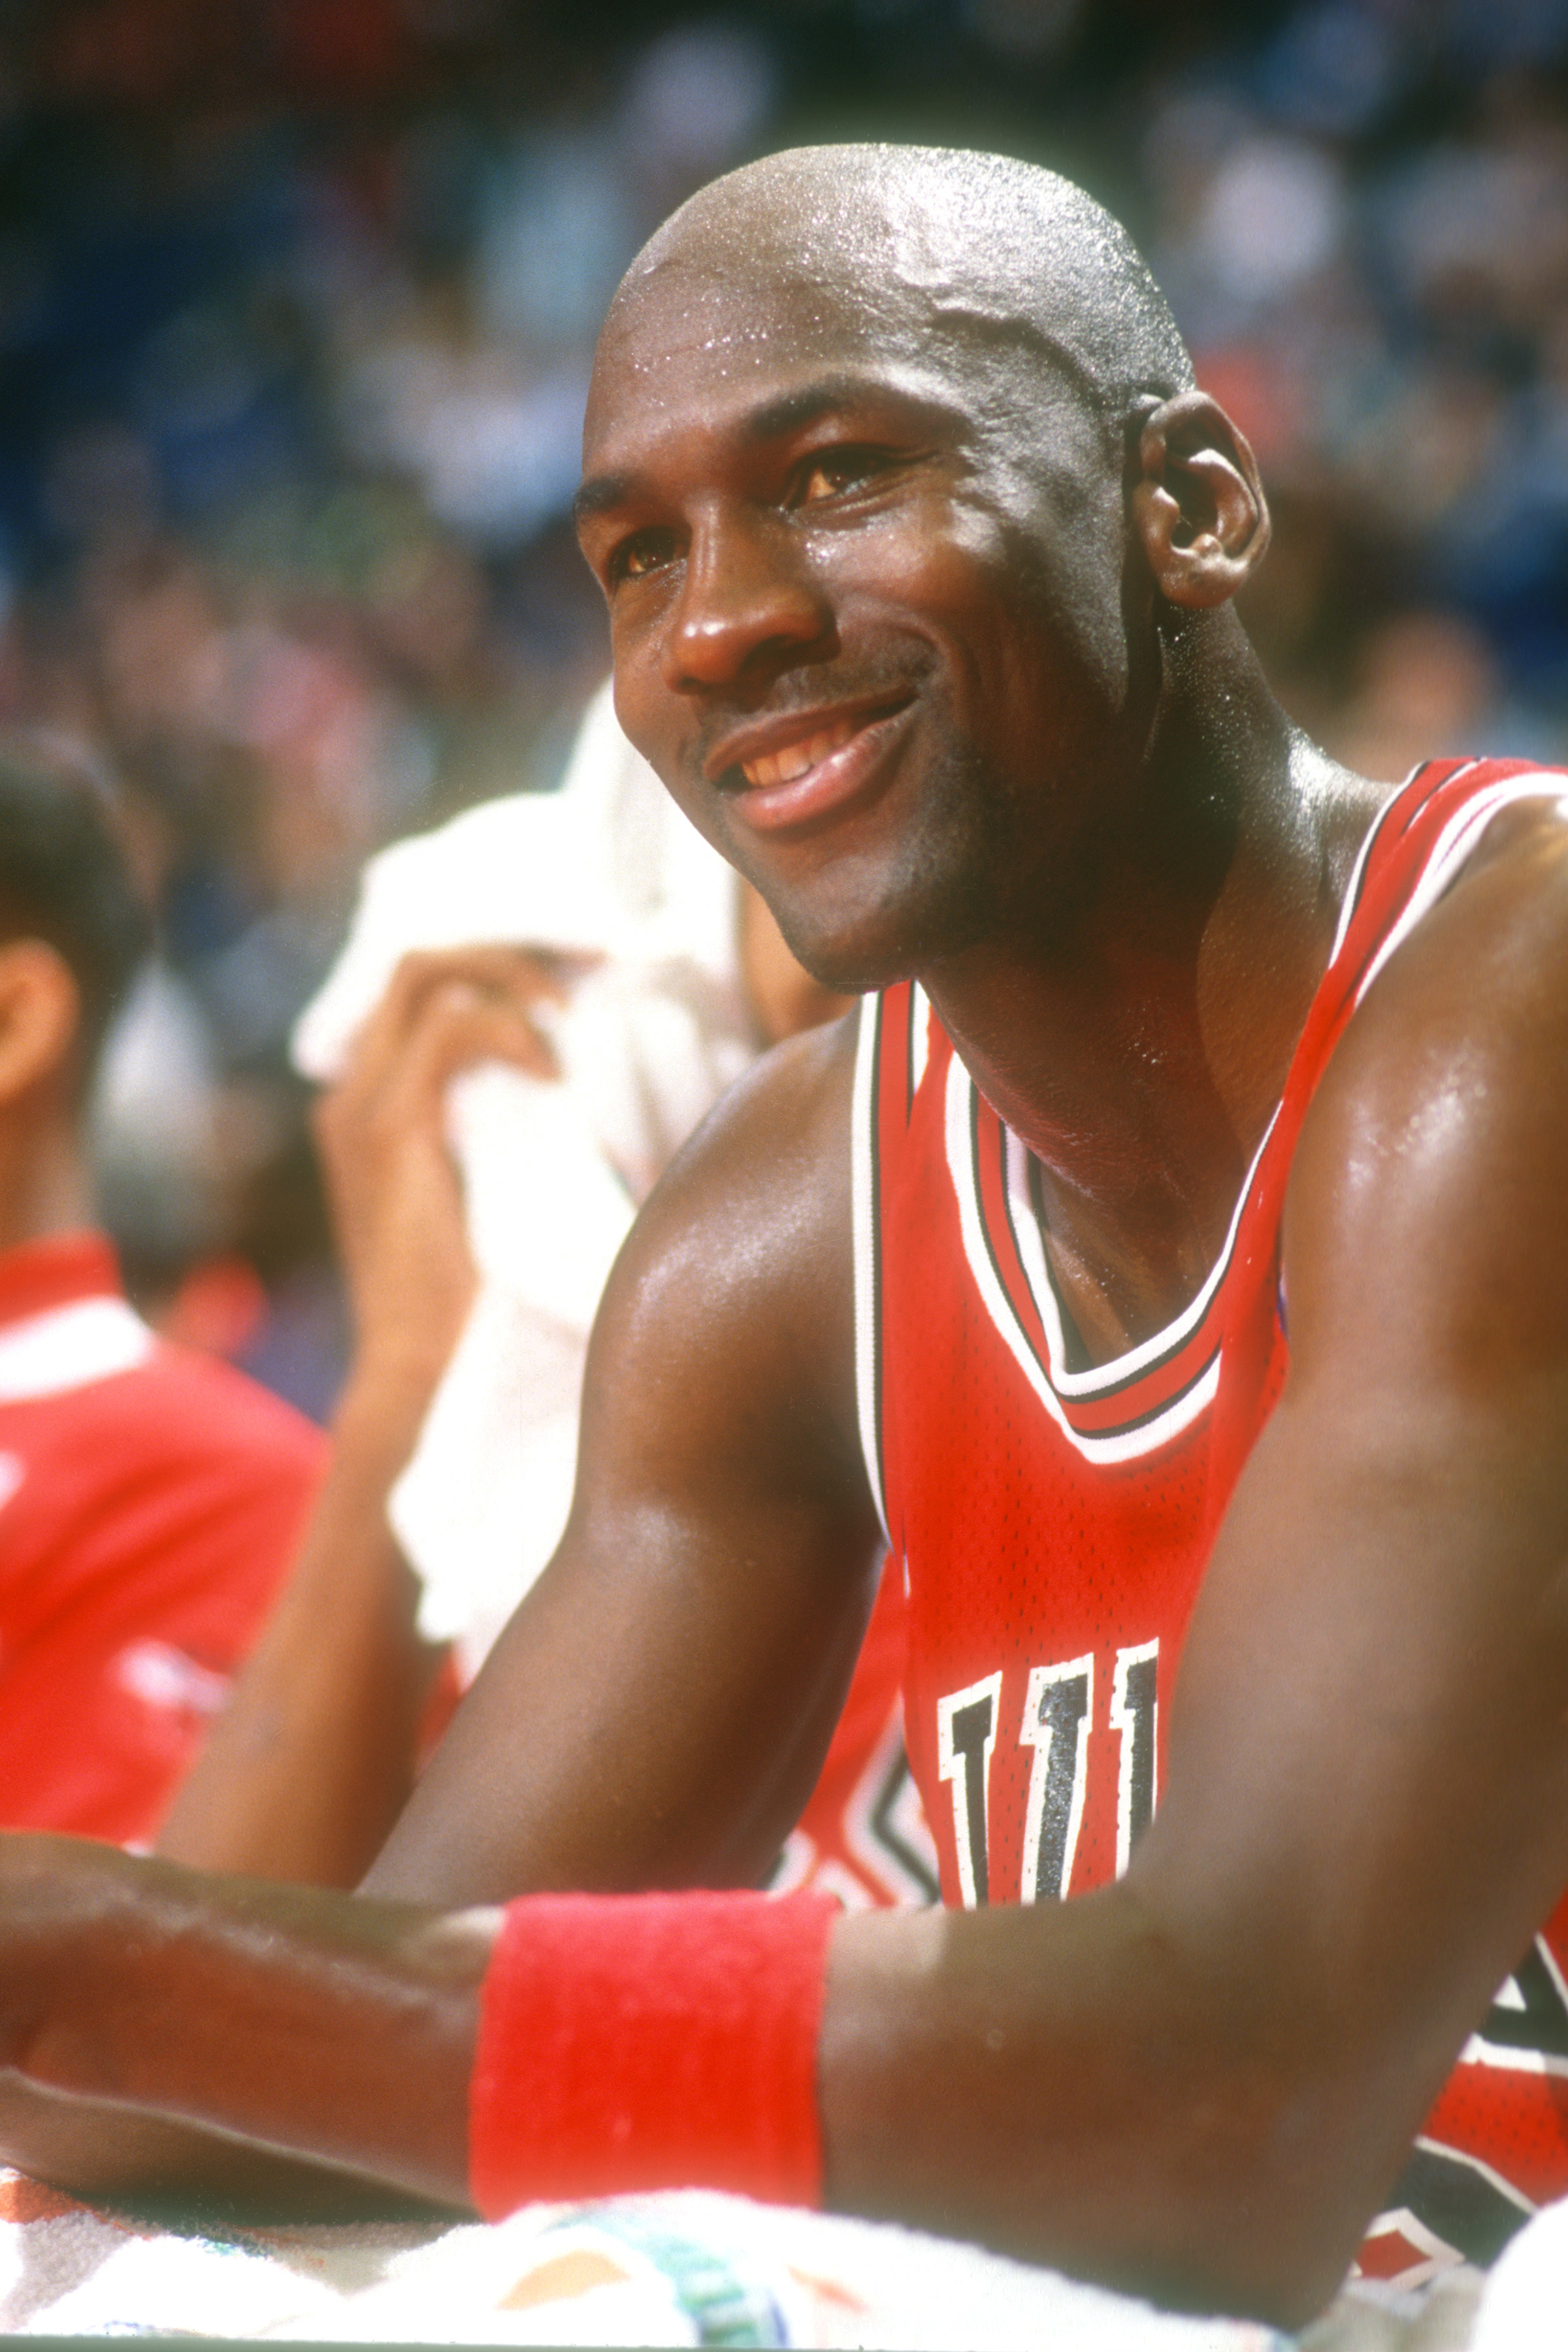 Michael Jordan smiles during a game